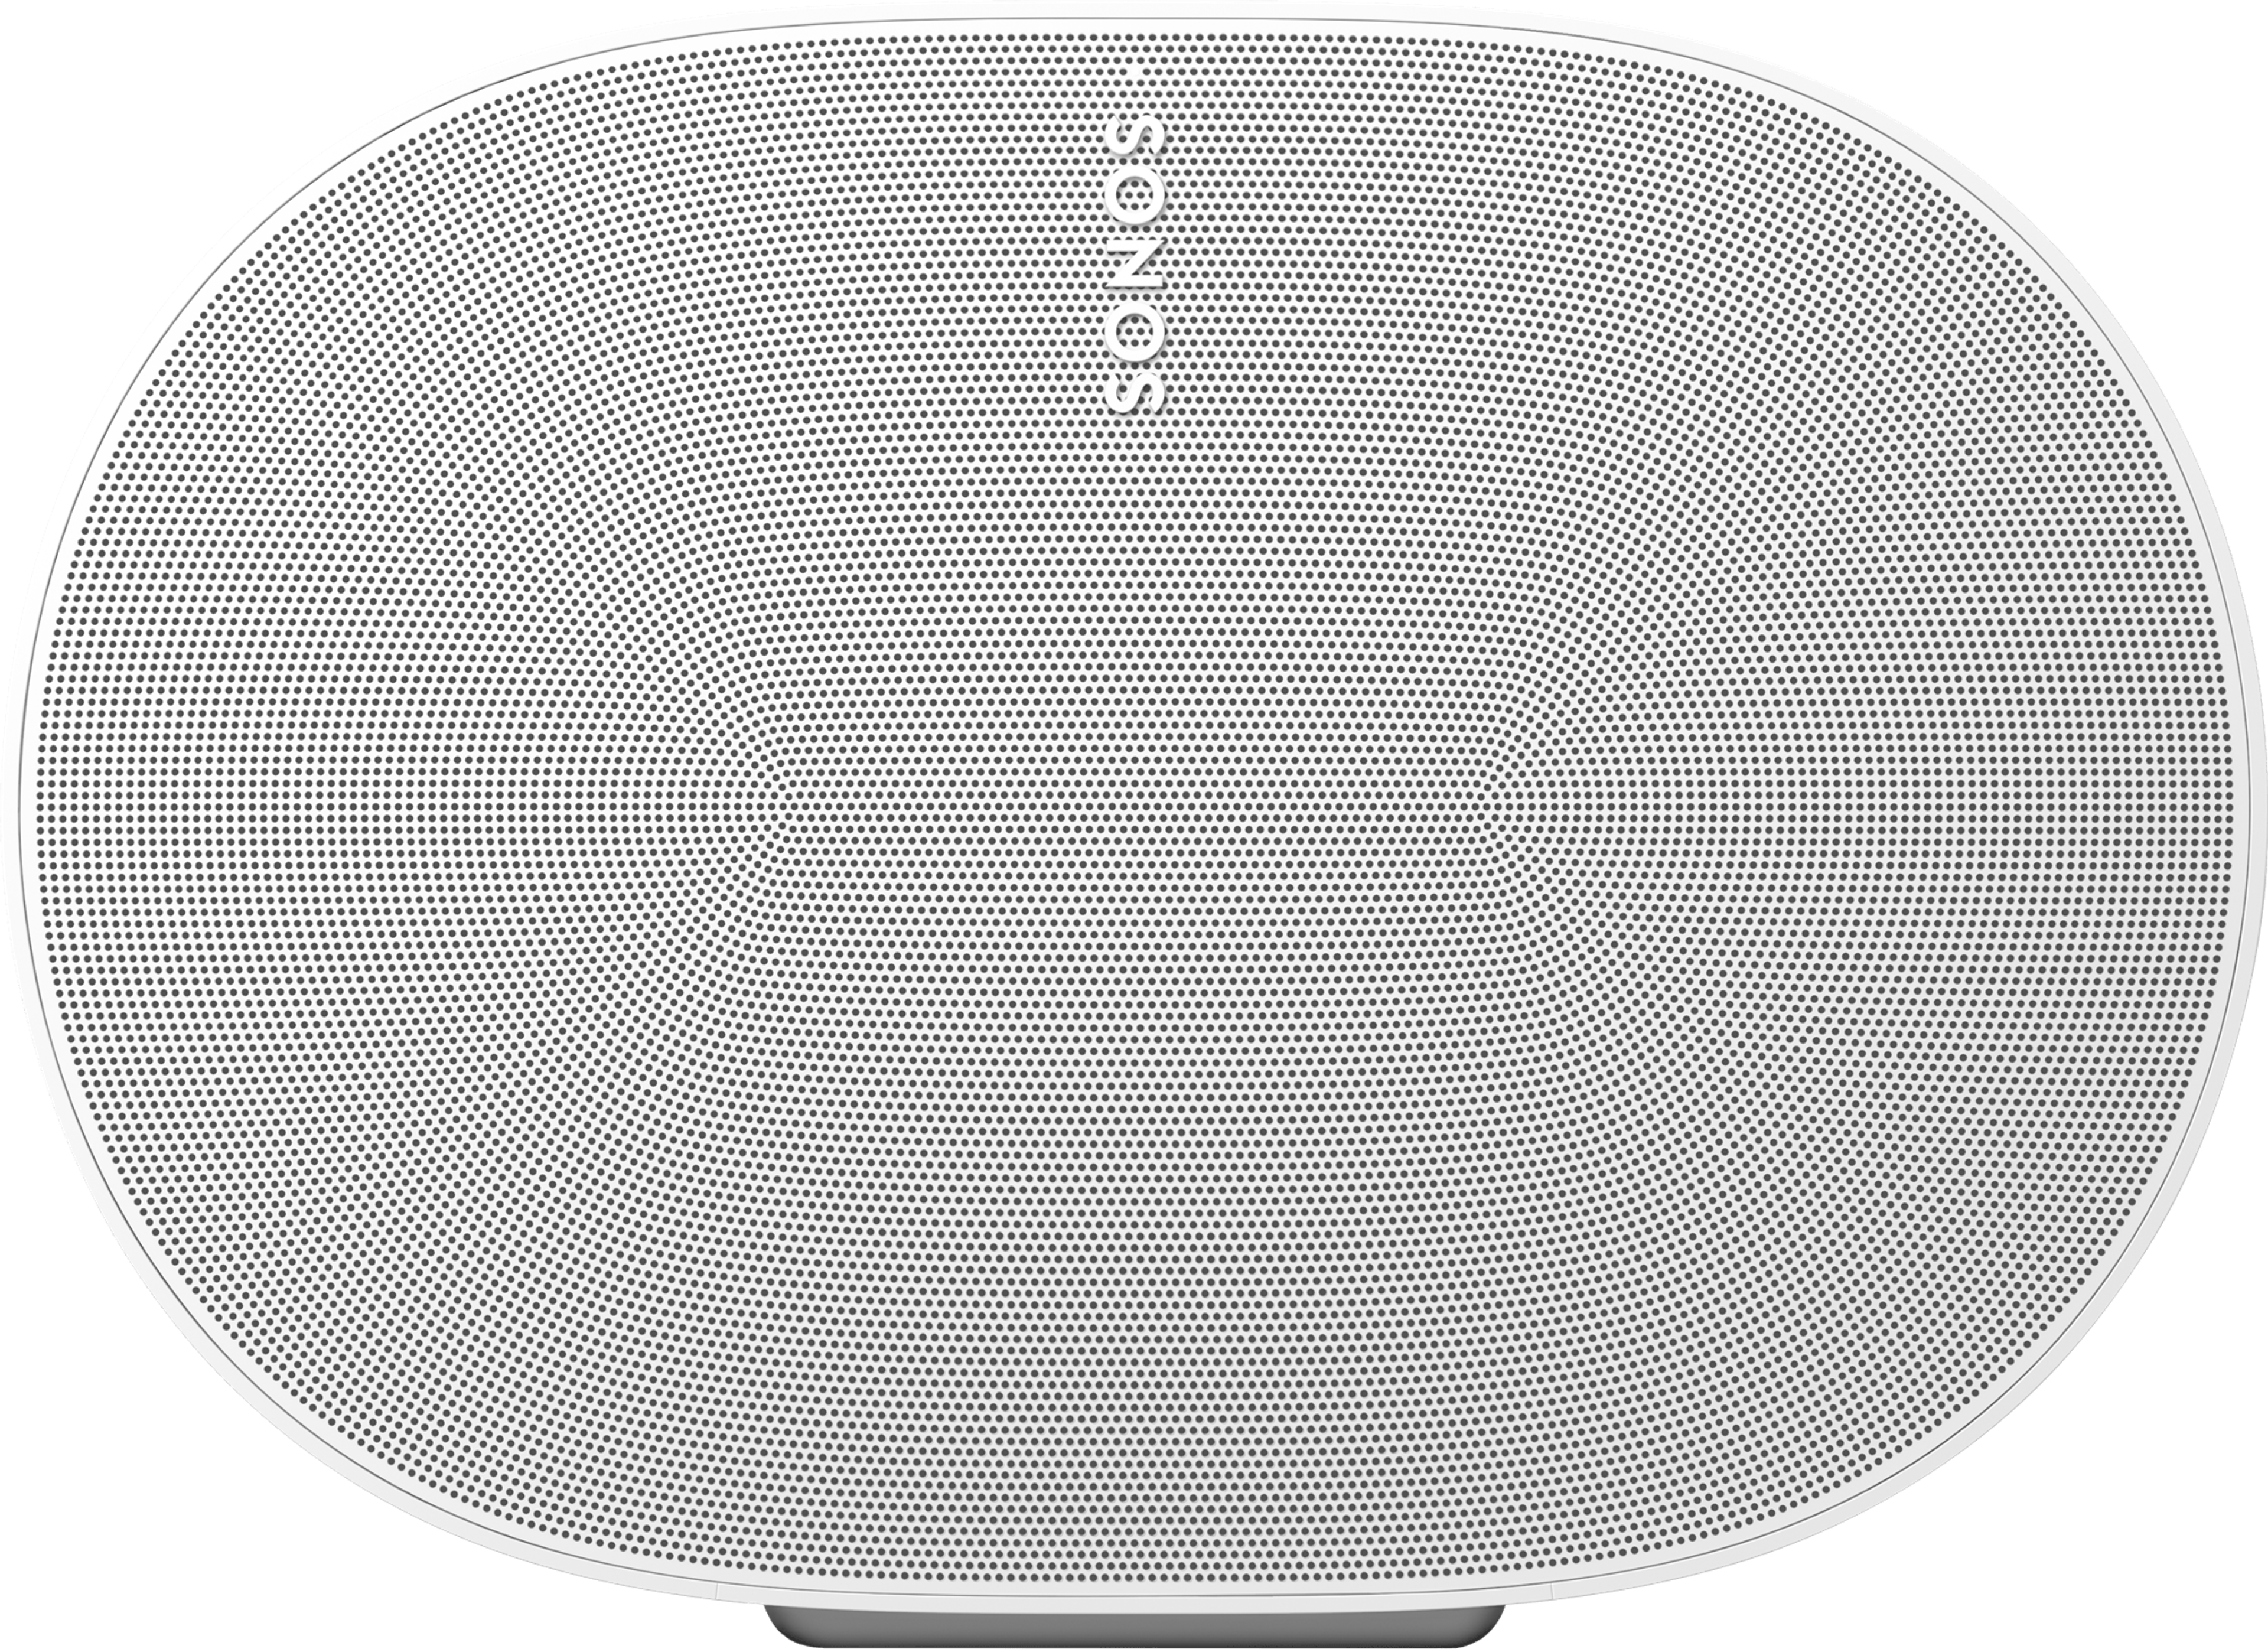 Nahaufnahme der Vorderseite eines Sonos Era 300 in Weiß